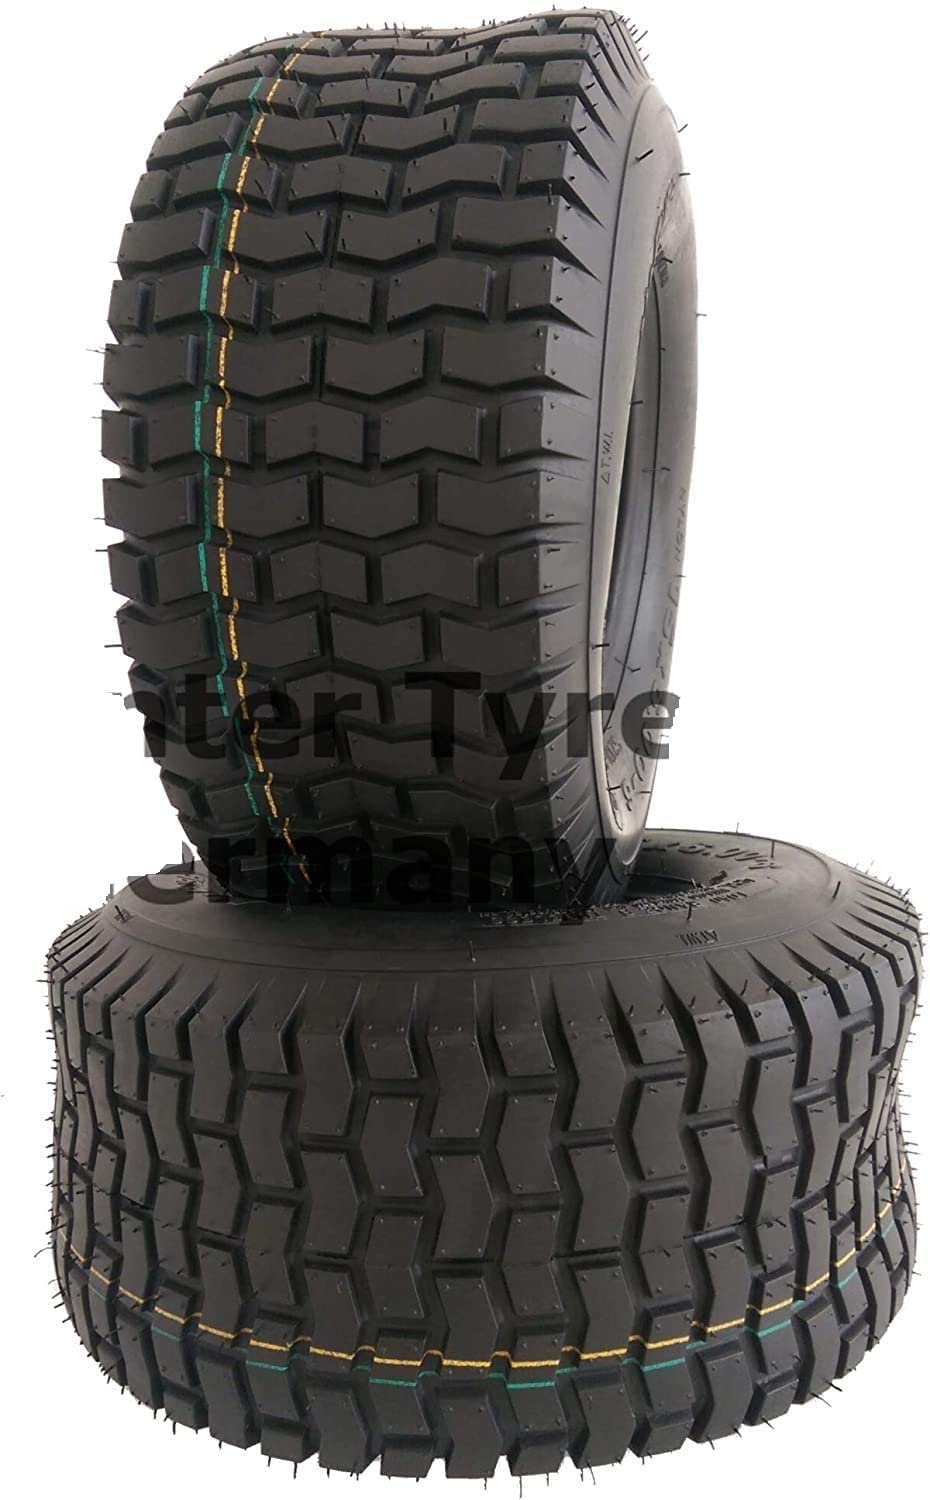 2x 20x10.00-8 S2101 Rasenmäherreifen Reifen inder Größe 20 x 10.00-8 20x10-8 20 x 10-8 Rasenreifen Reifen für Aufsitzmäher Rasentraktor Reifenmantel Stollenprofil von NARUBB